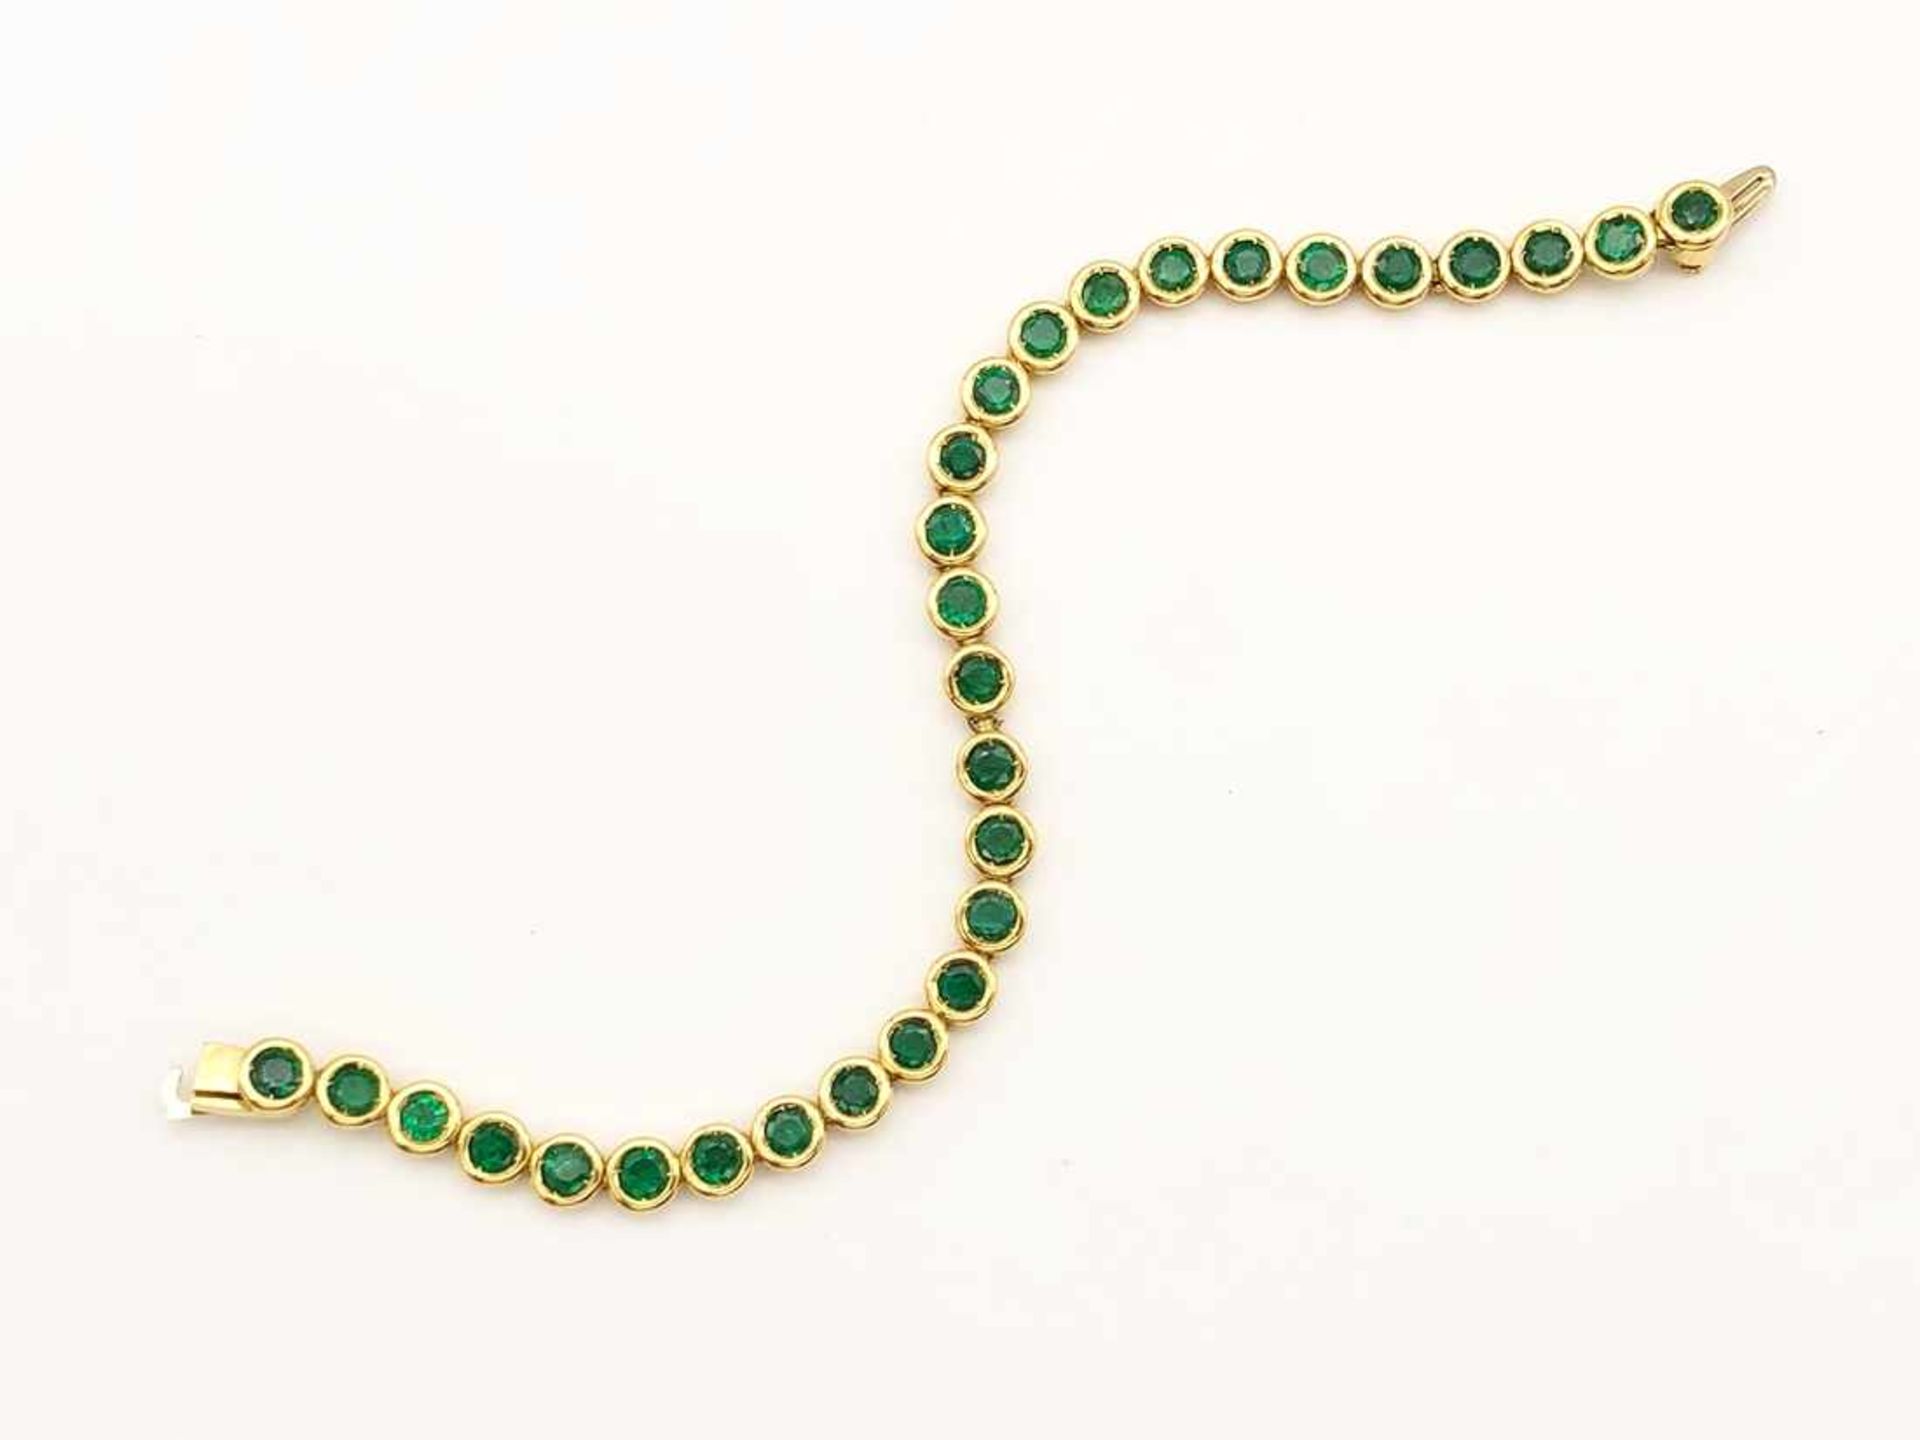 Tennisarmband 750 GG / 22 g, 29 Smaragde ca. 10 ct, teils defekt, Länge: ca.18 cm, Gebrauchsspuren - Bild 3 aus 9